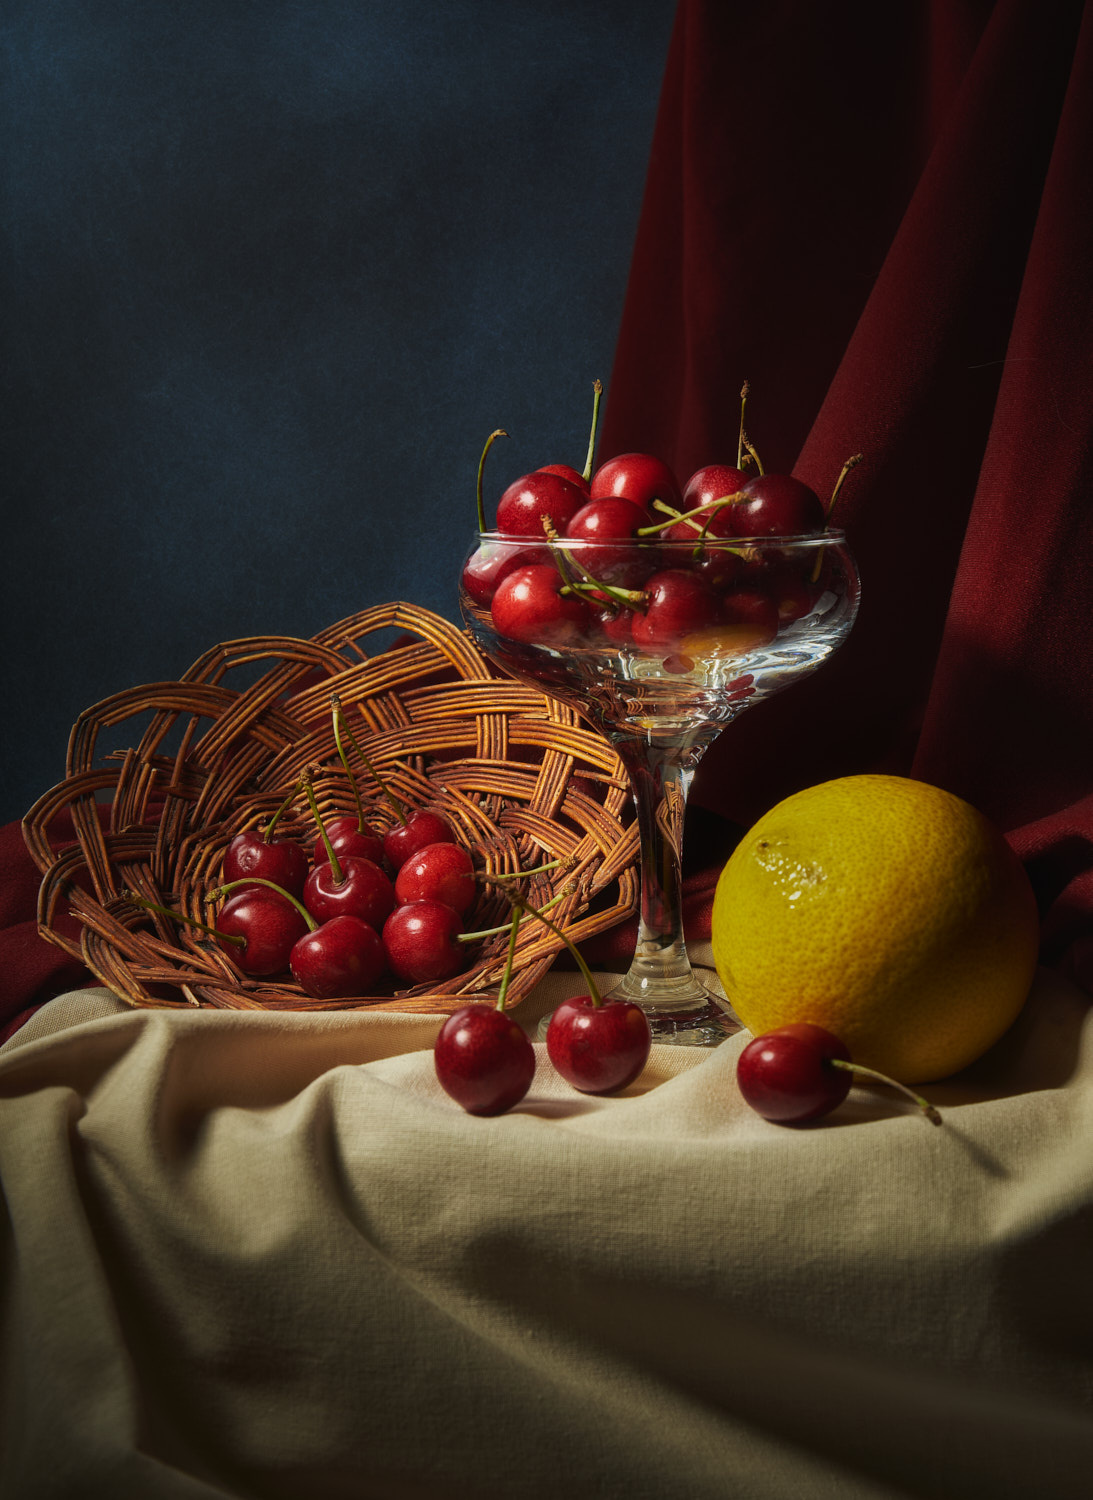 Черешня и лимон натюрморт композиция постановка сцена плоды еда фрукты ягоды черешня лимон